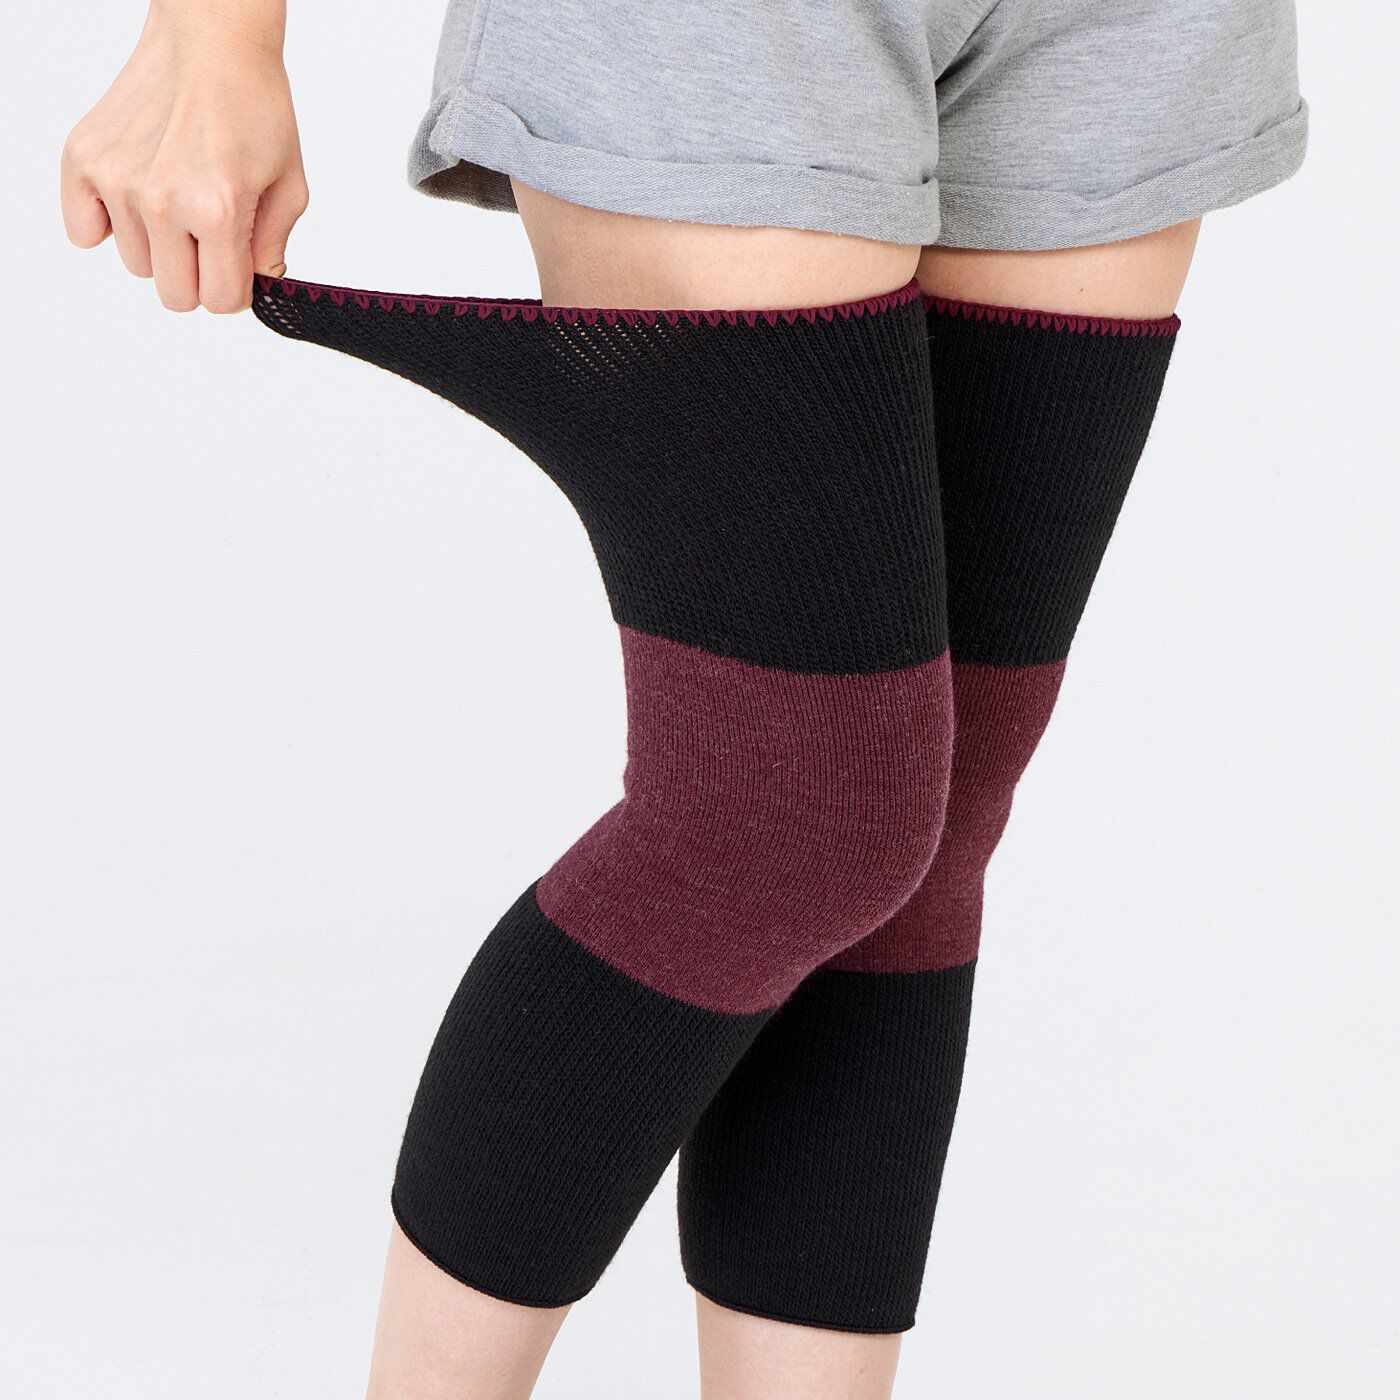 flufeel|ひざをいたわりたい人のためのひざふかふかパイル仕様のあたたかレッグウォーマーの会|ひざ以外はゴム編みで、伸縮性は抜群でずれにくい。